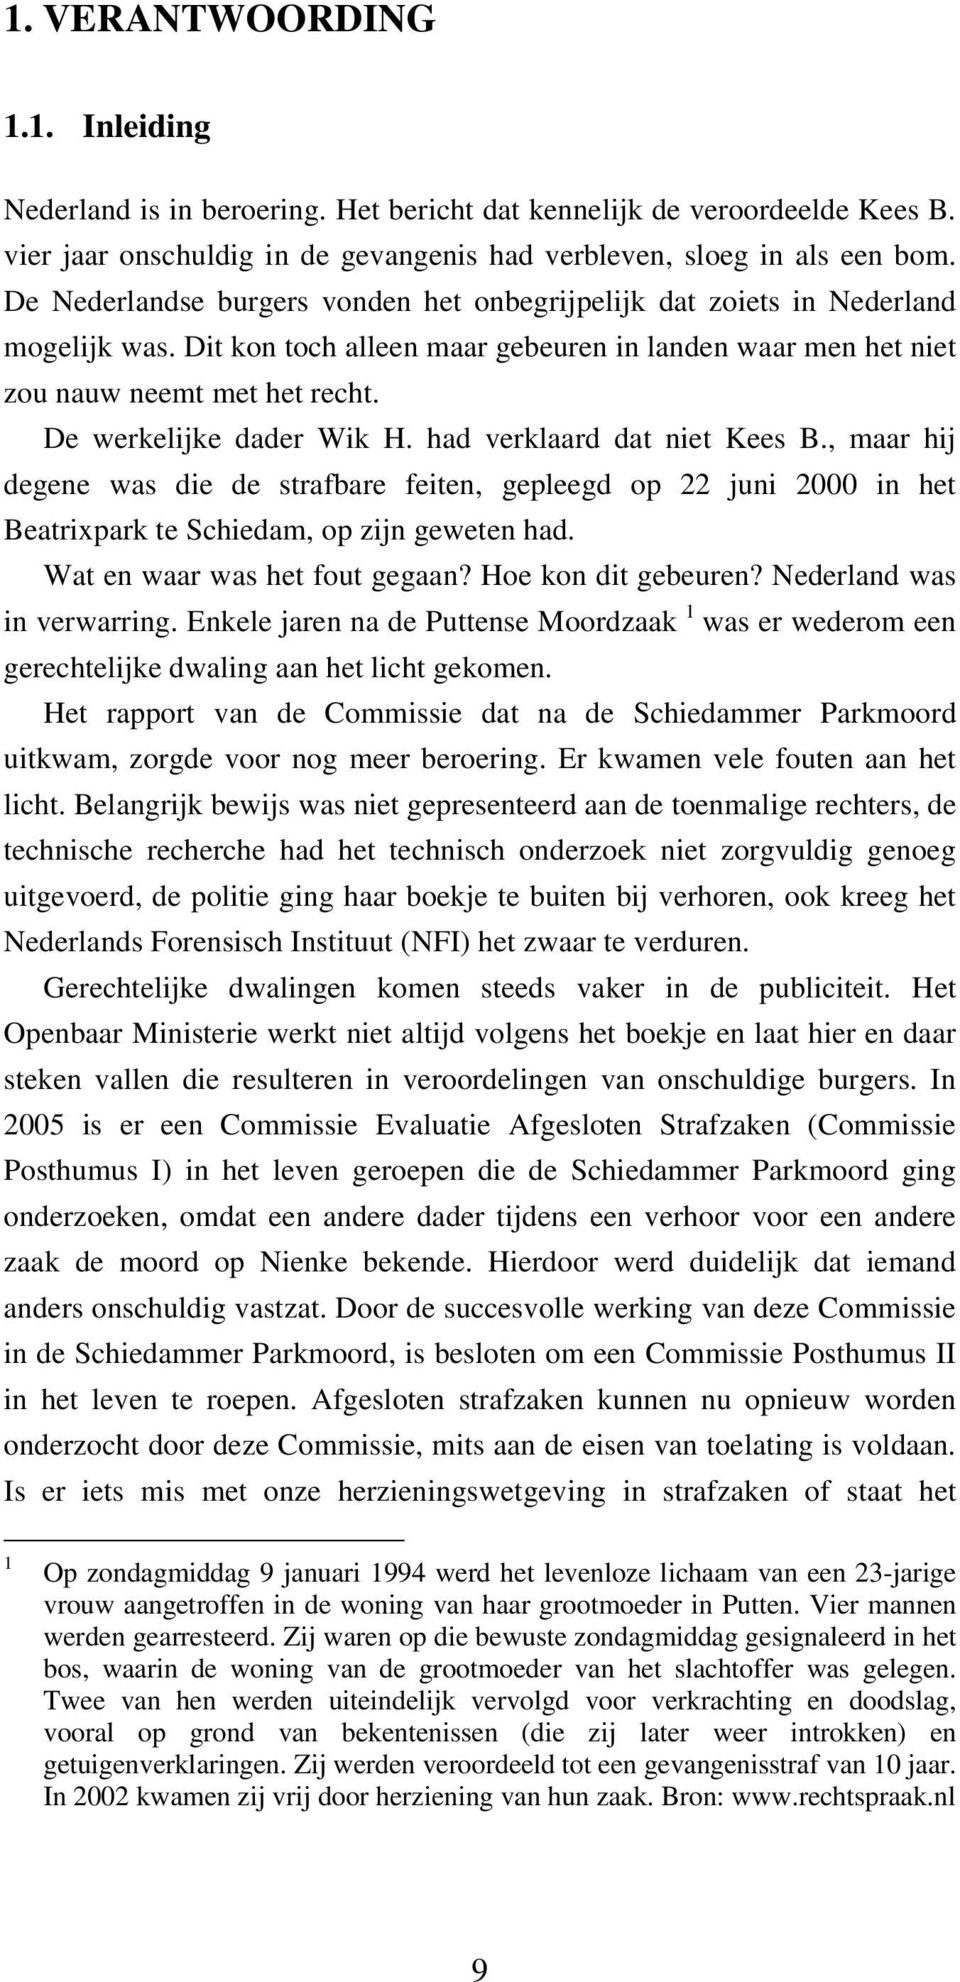 De werkelijke dader Wik H. had verklaard dat niet Kees B., maar hij degene was die de strafbare feiten, gepleegd op 22 juni 2000 in het Beatrixpark te Schiedam, op zijn geweten had.